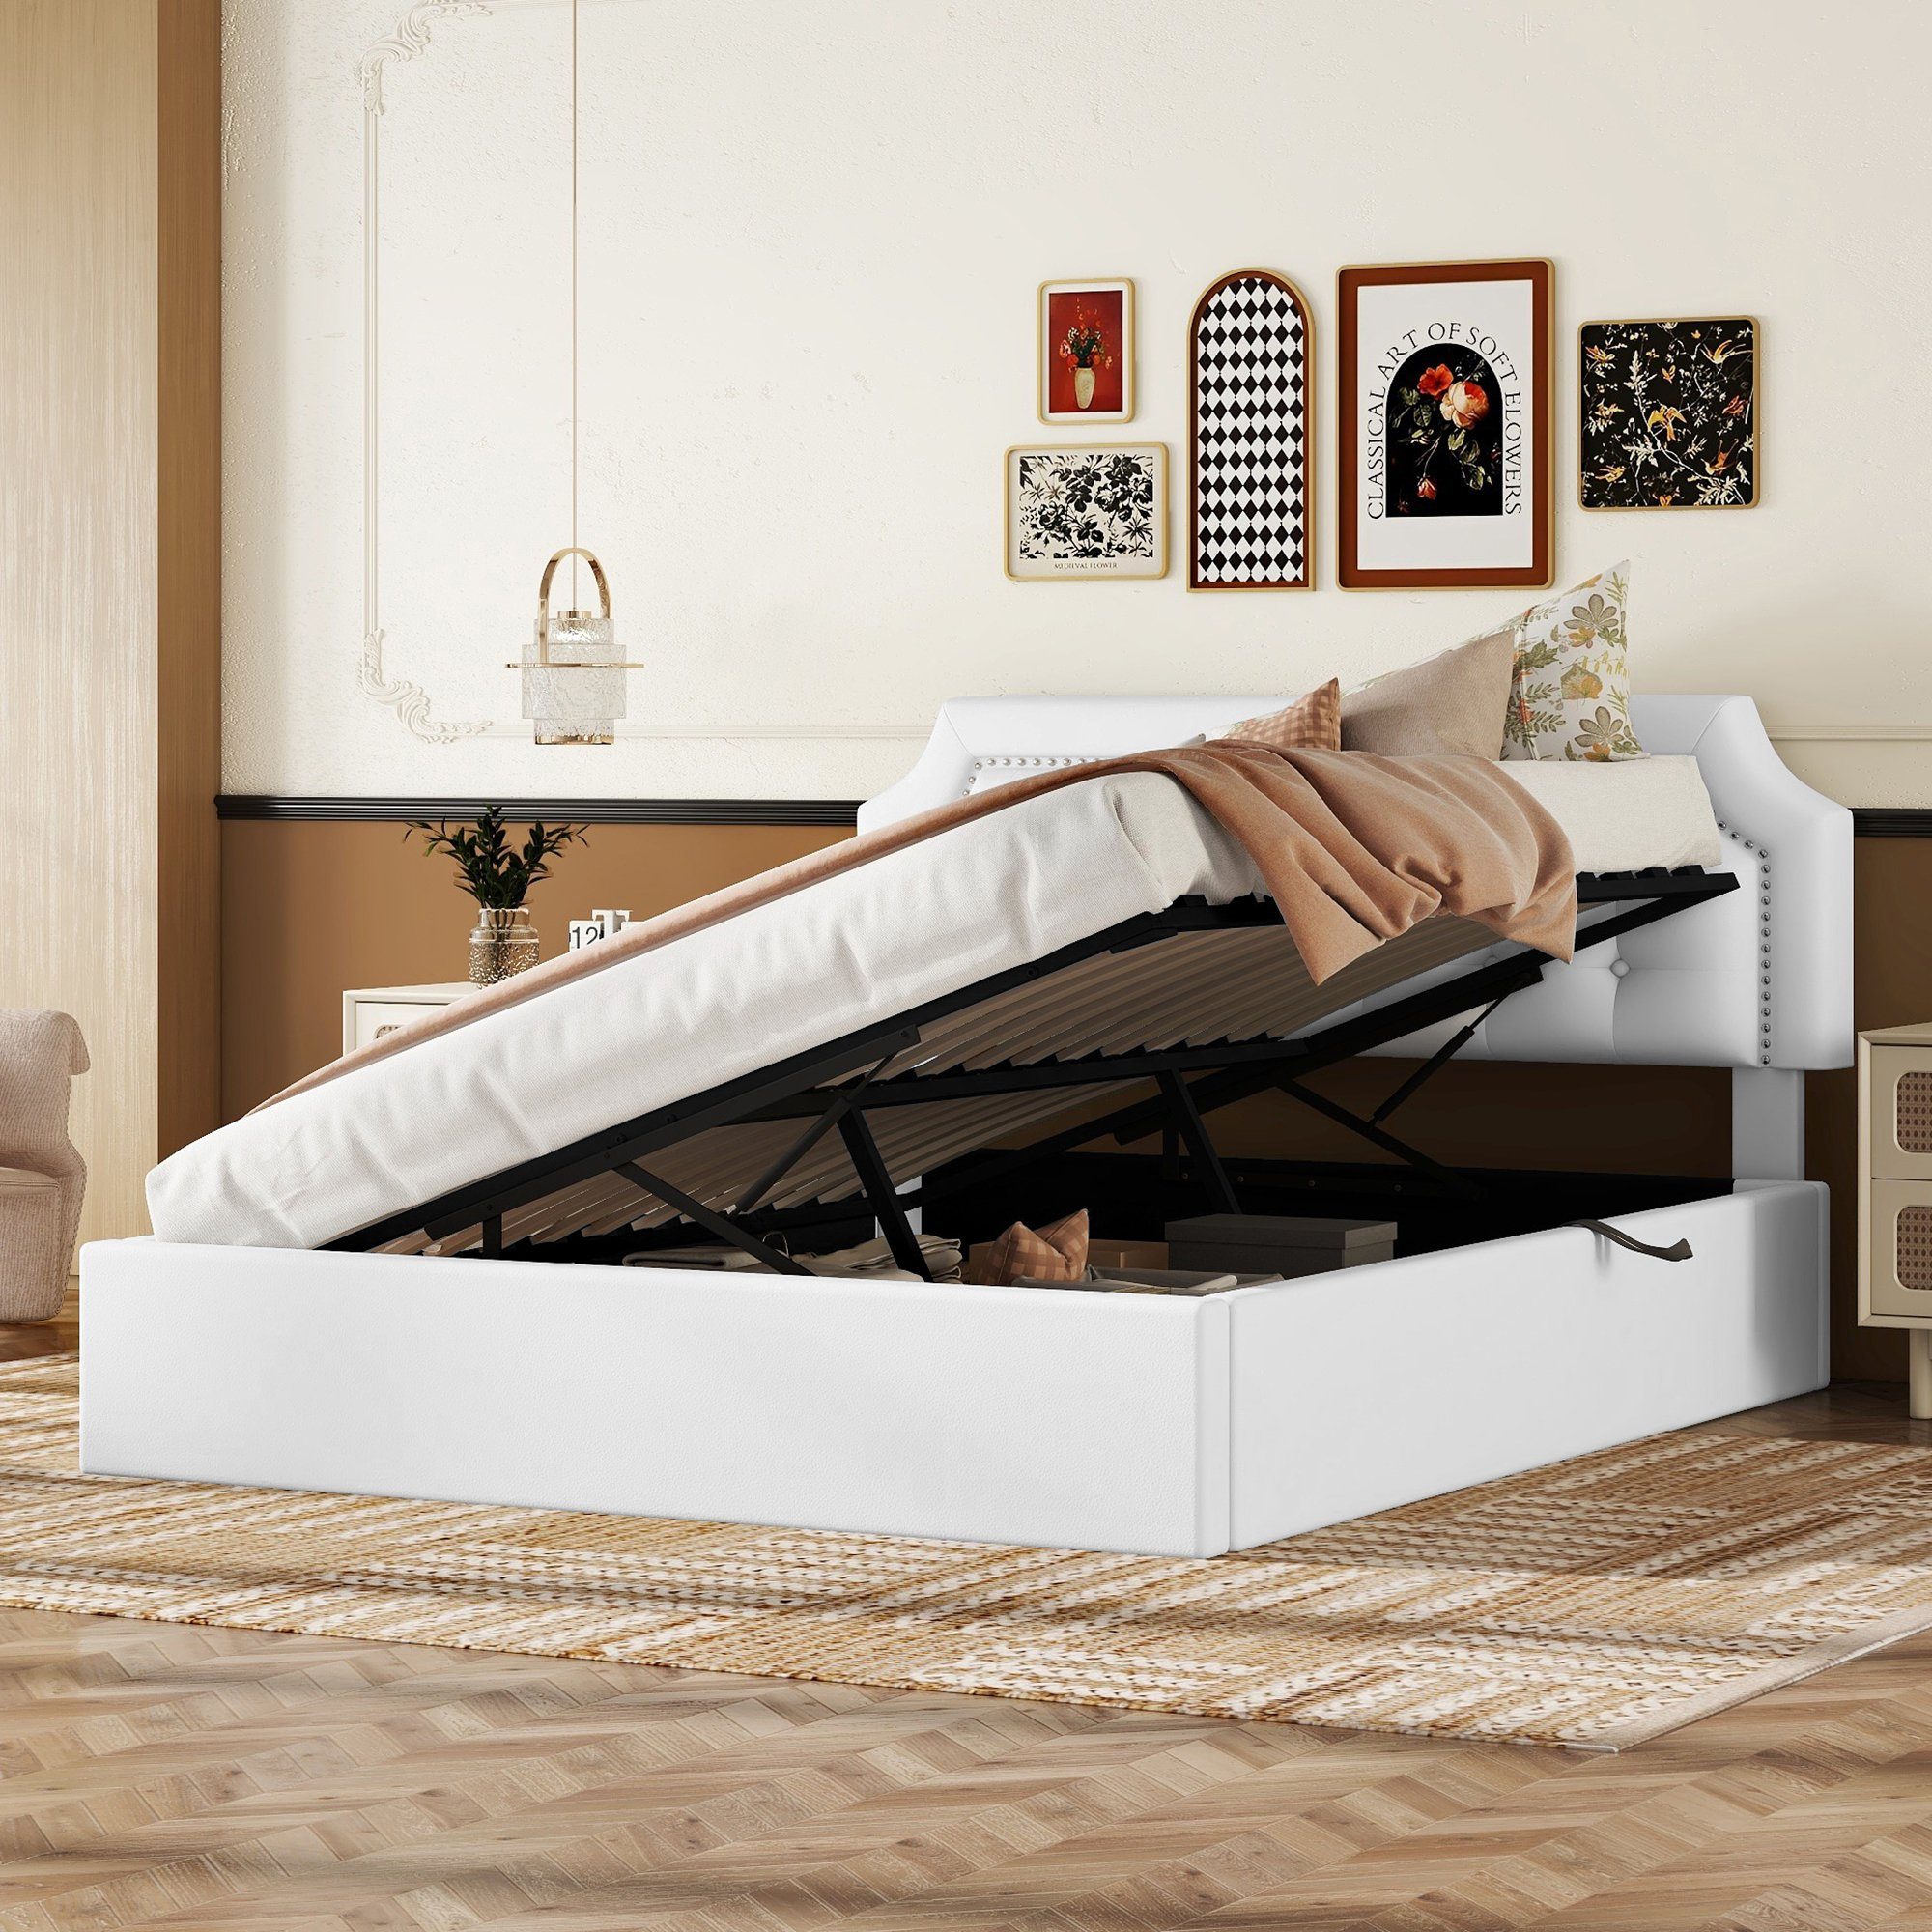 OKWISH Polsterbett hydraulisches Zwei-Wege-Bett, minimalistisches Design (Stauraumbett, Flachbett 160*200cm), ohne Matratze